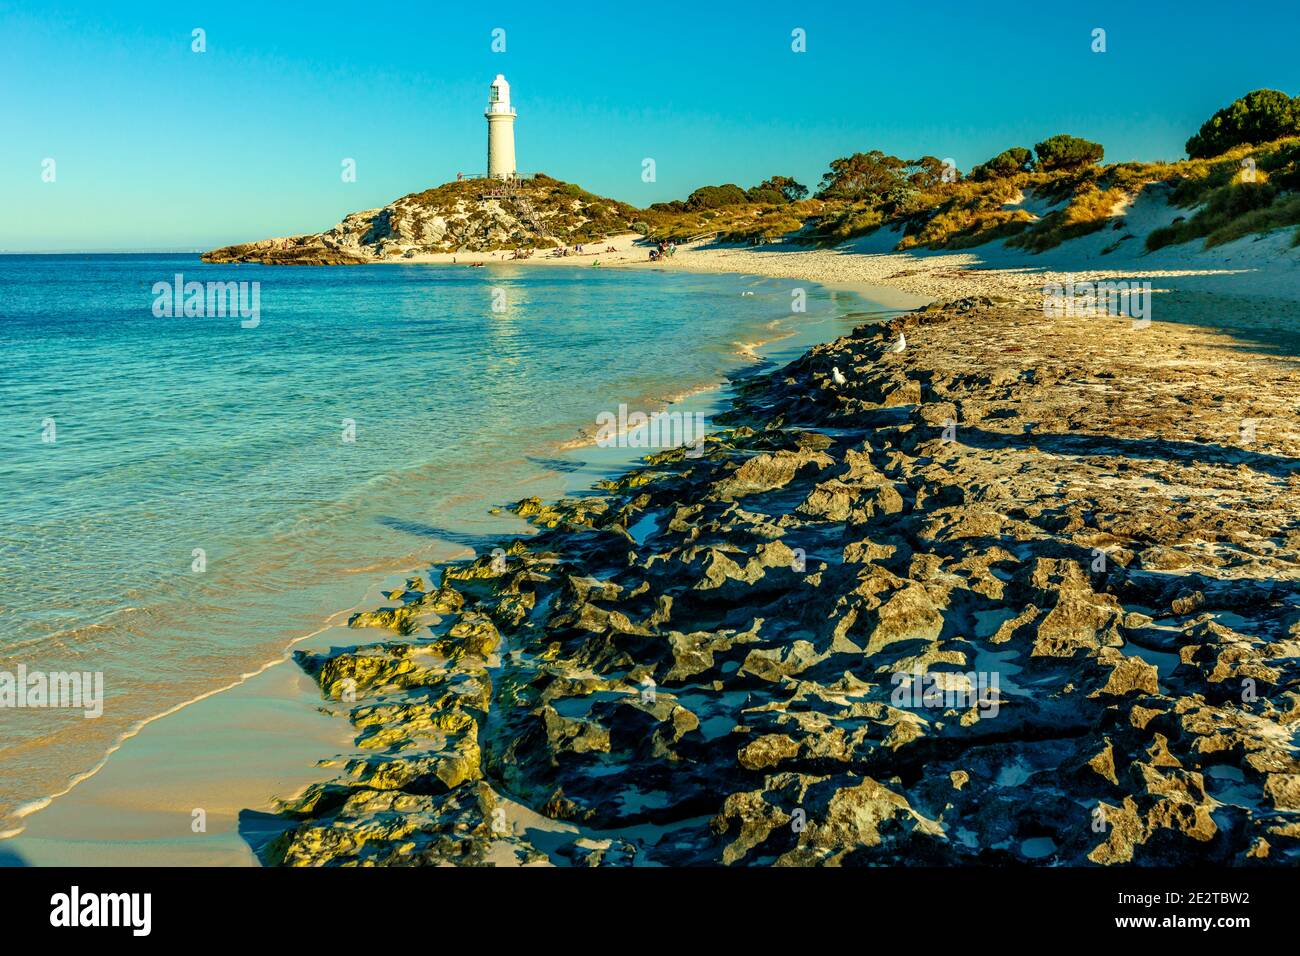 La magnifique plage de Pinky et le phare de Bathurst se reflètent sur la mer turquoise en fin d'après-midi. Côte nord de l'île Rottnest, près de Perth, ouest Banque D'Images